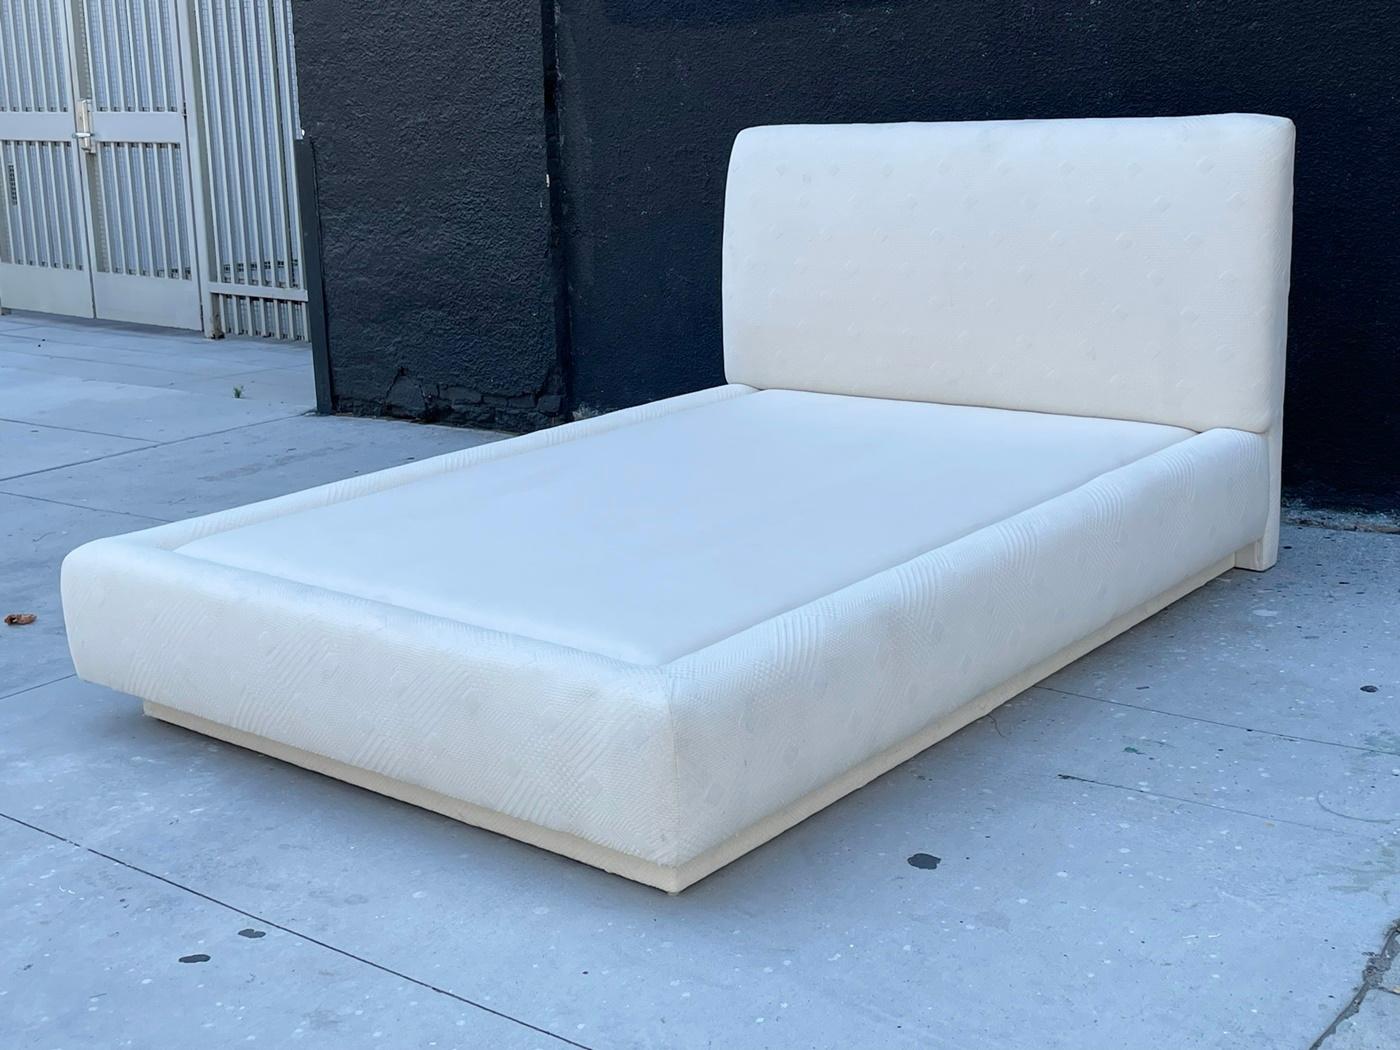 Wir präsentieren unser Vintage Queen Size Platform Bed, USA 1980's - ein zeitloses Stück, das nahtlos Retro-Charme mit moderner Funktionalität verbindet. Dieses exquisite Bett verkörpert die Essenz der Vintage-Eleganz und ist damit die perfekte